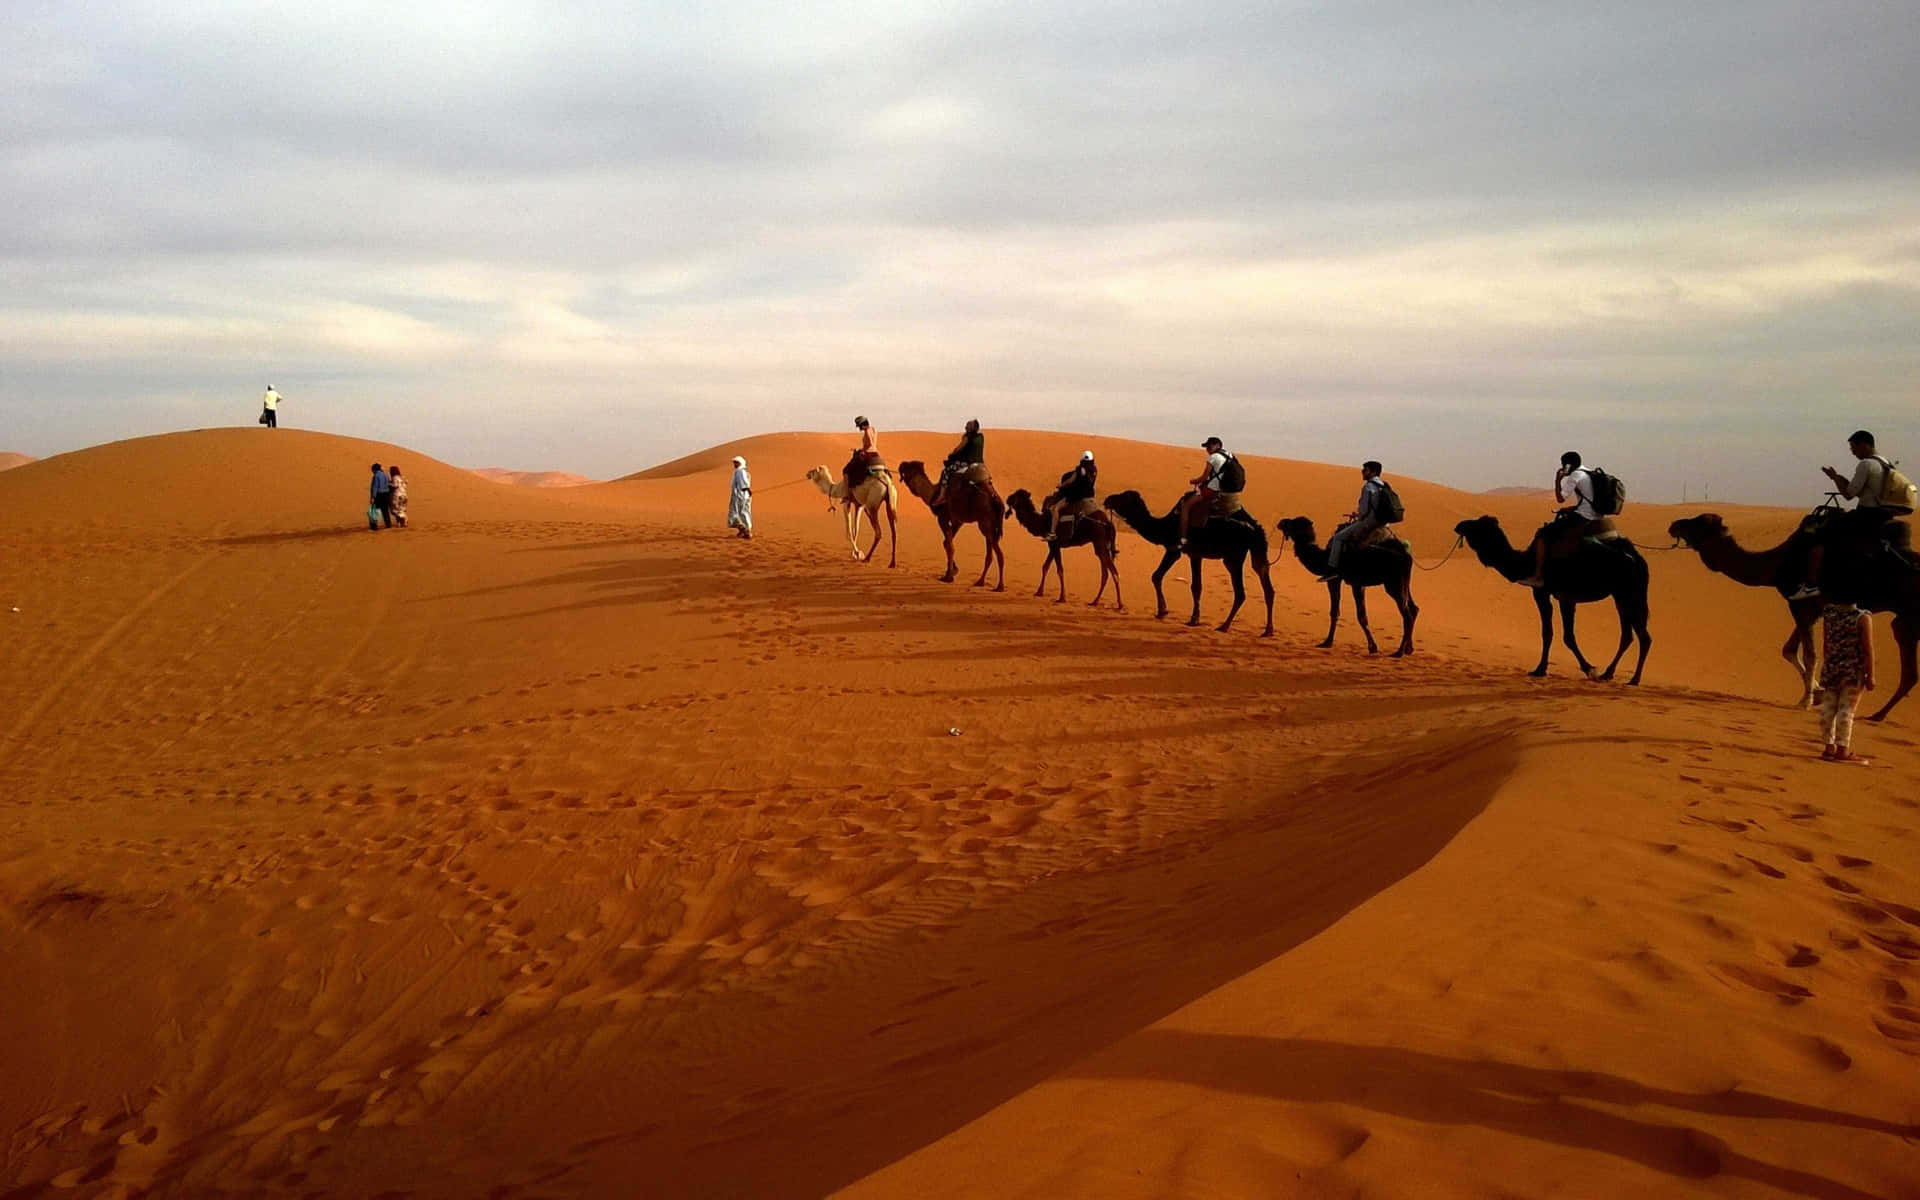 A camel standing in the vast desert.